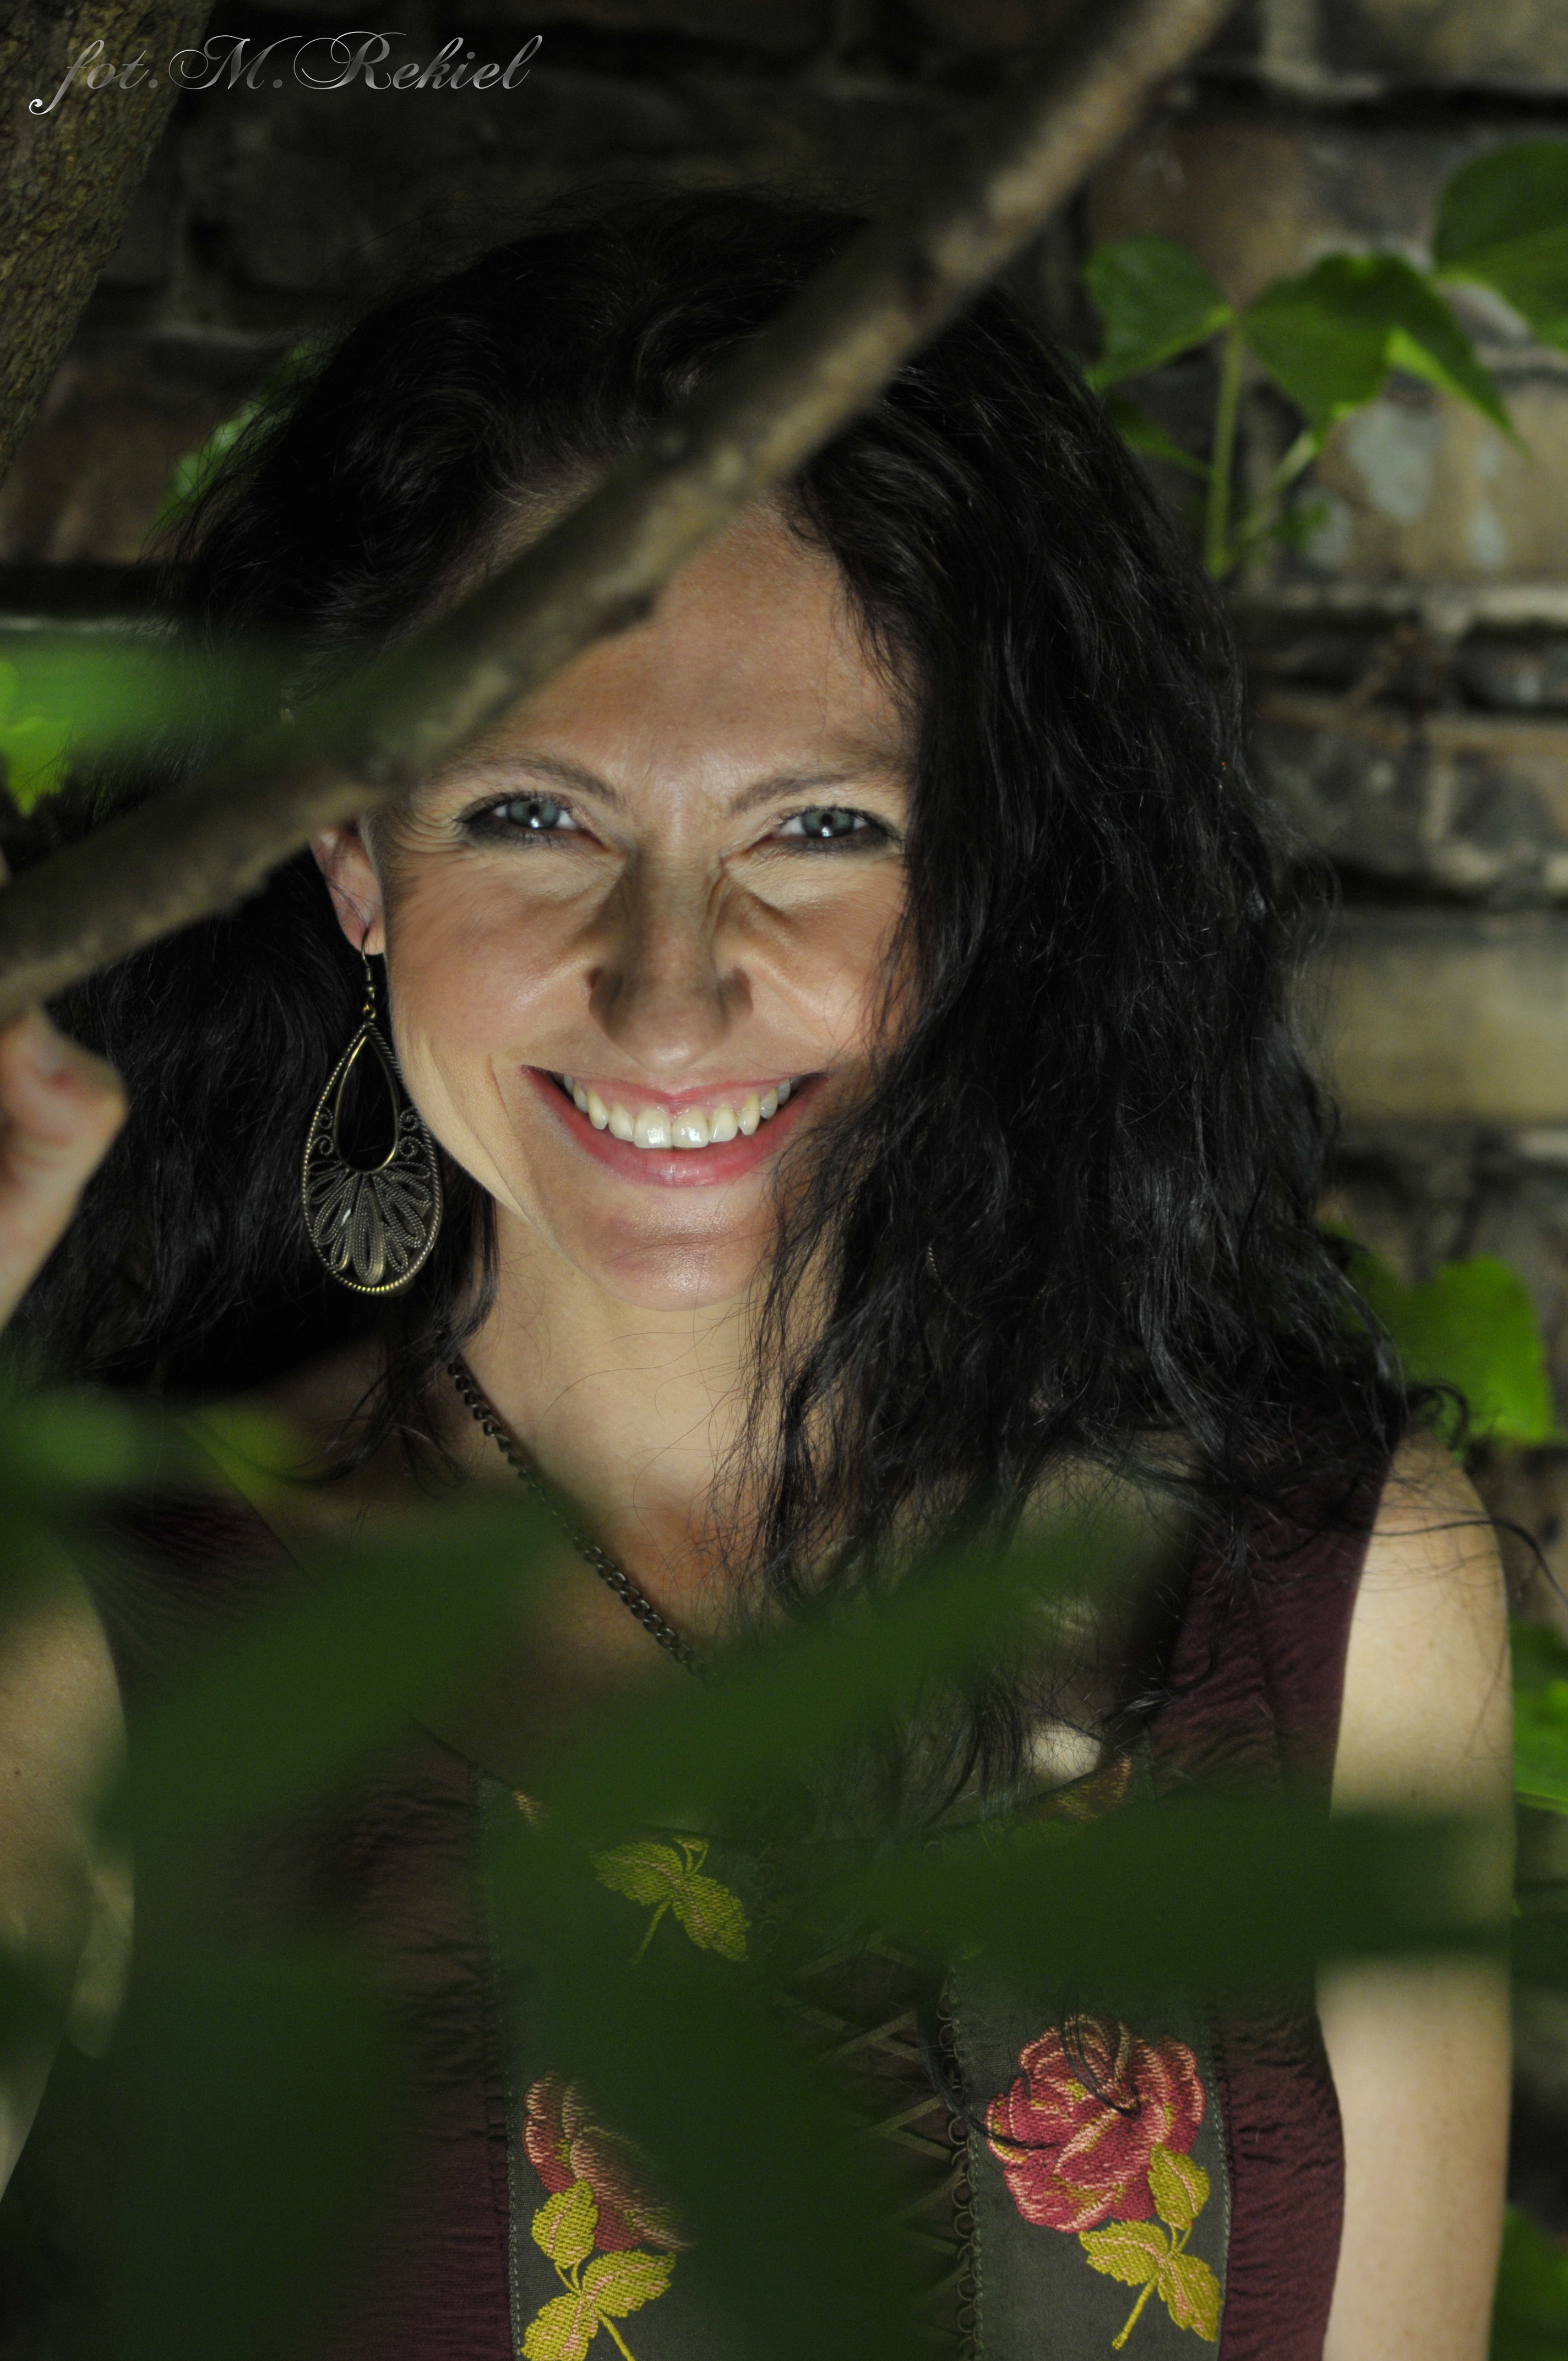 Portret uśmiechającej się kobiety (Anny Winiarskiej) skrytej wśród gałęzi i liści